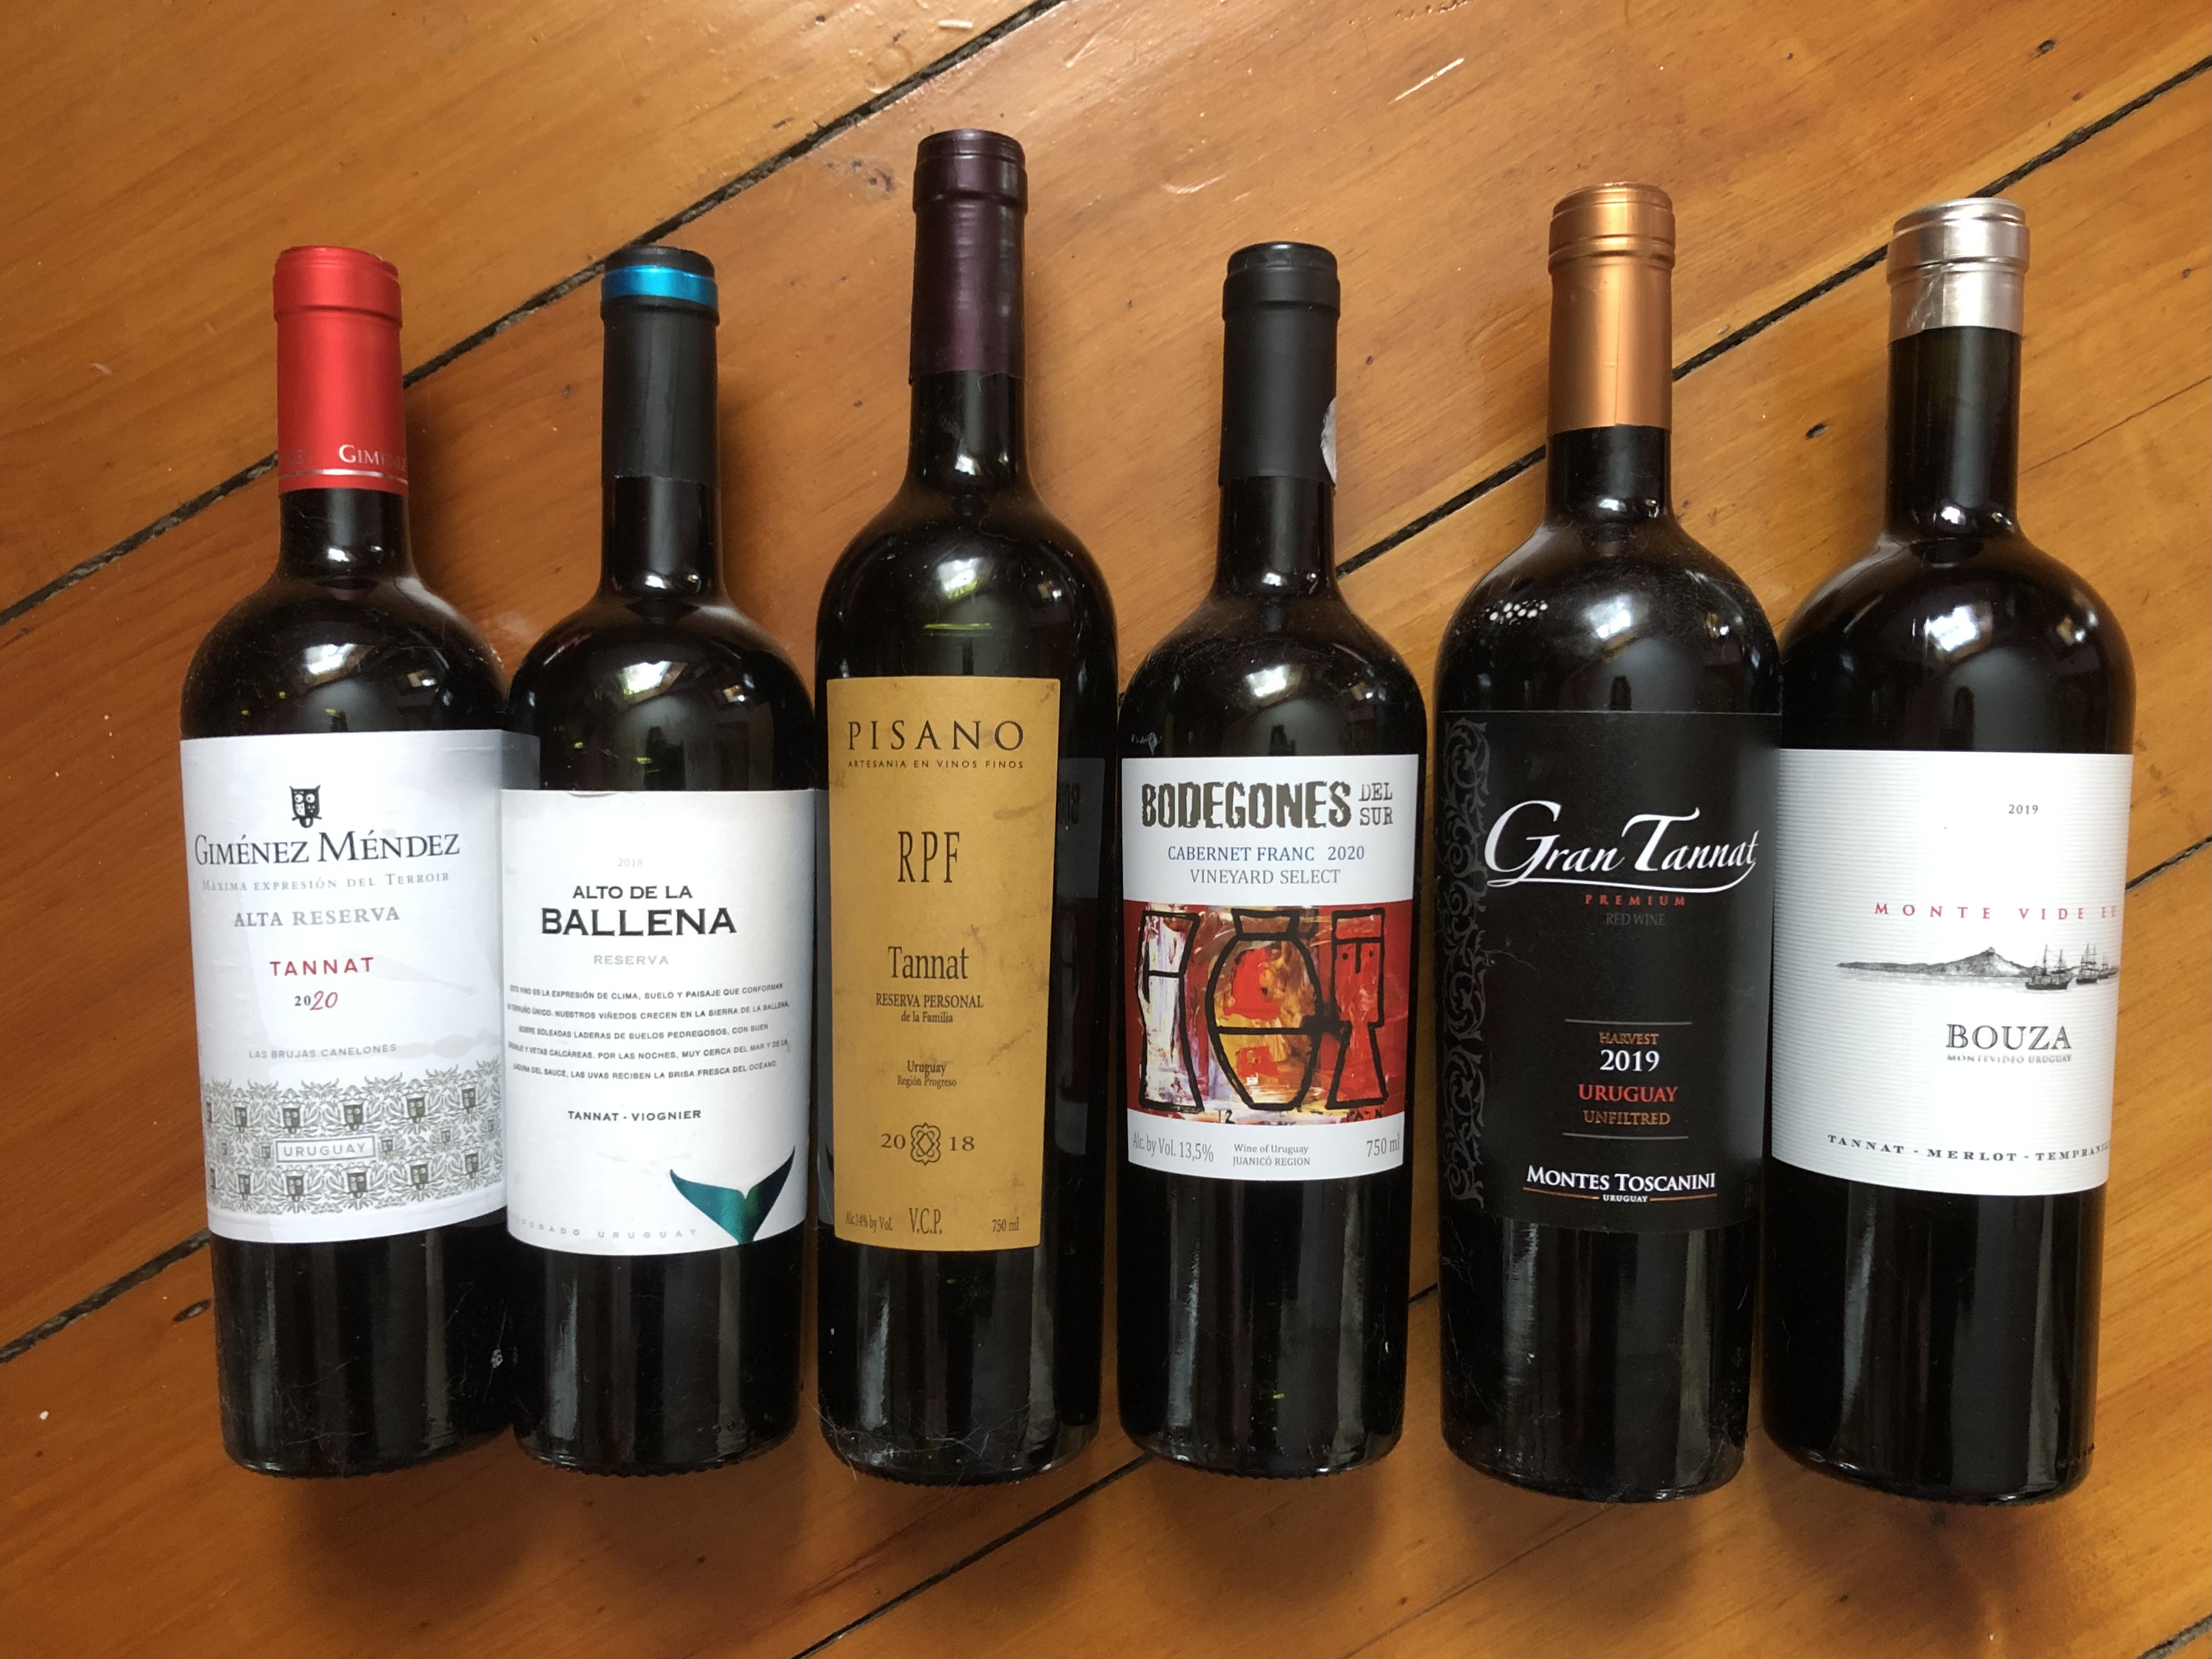 Los vinos uruguayos son asequibles, deliciosos y distintivos.